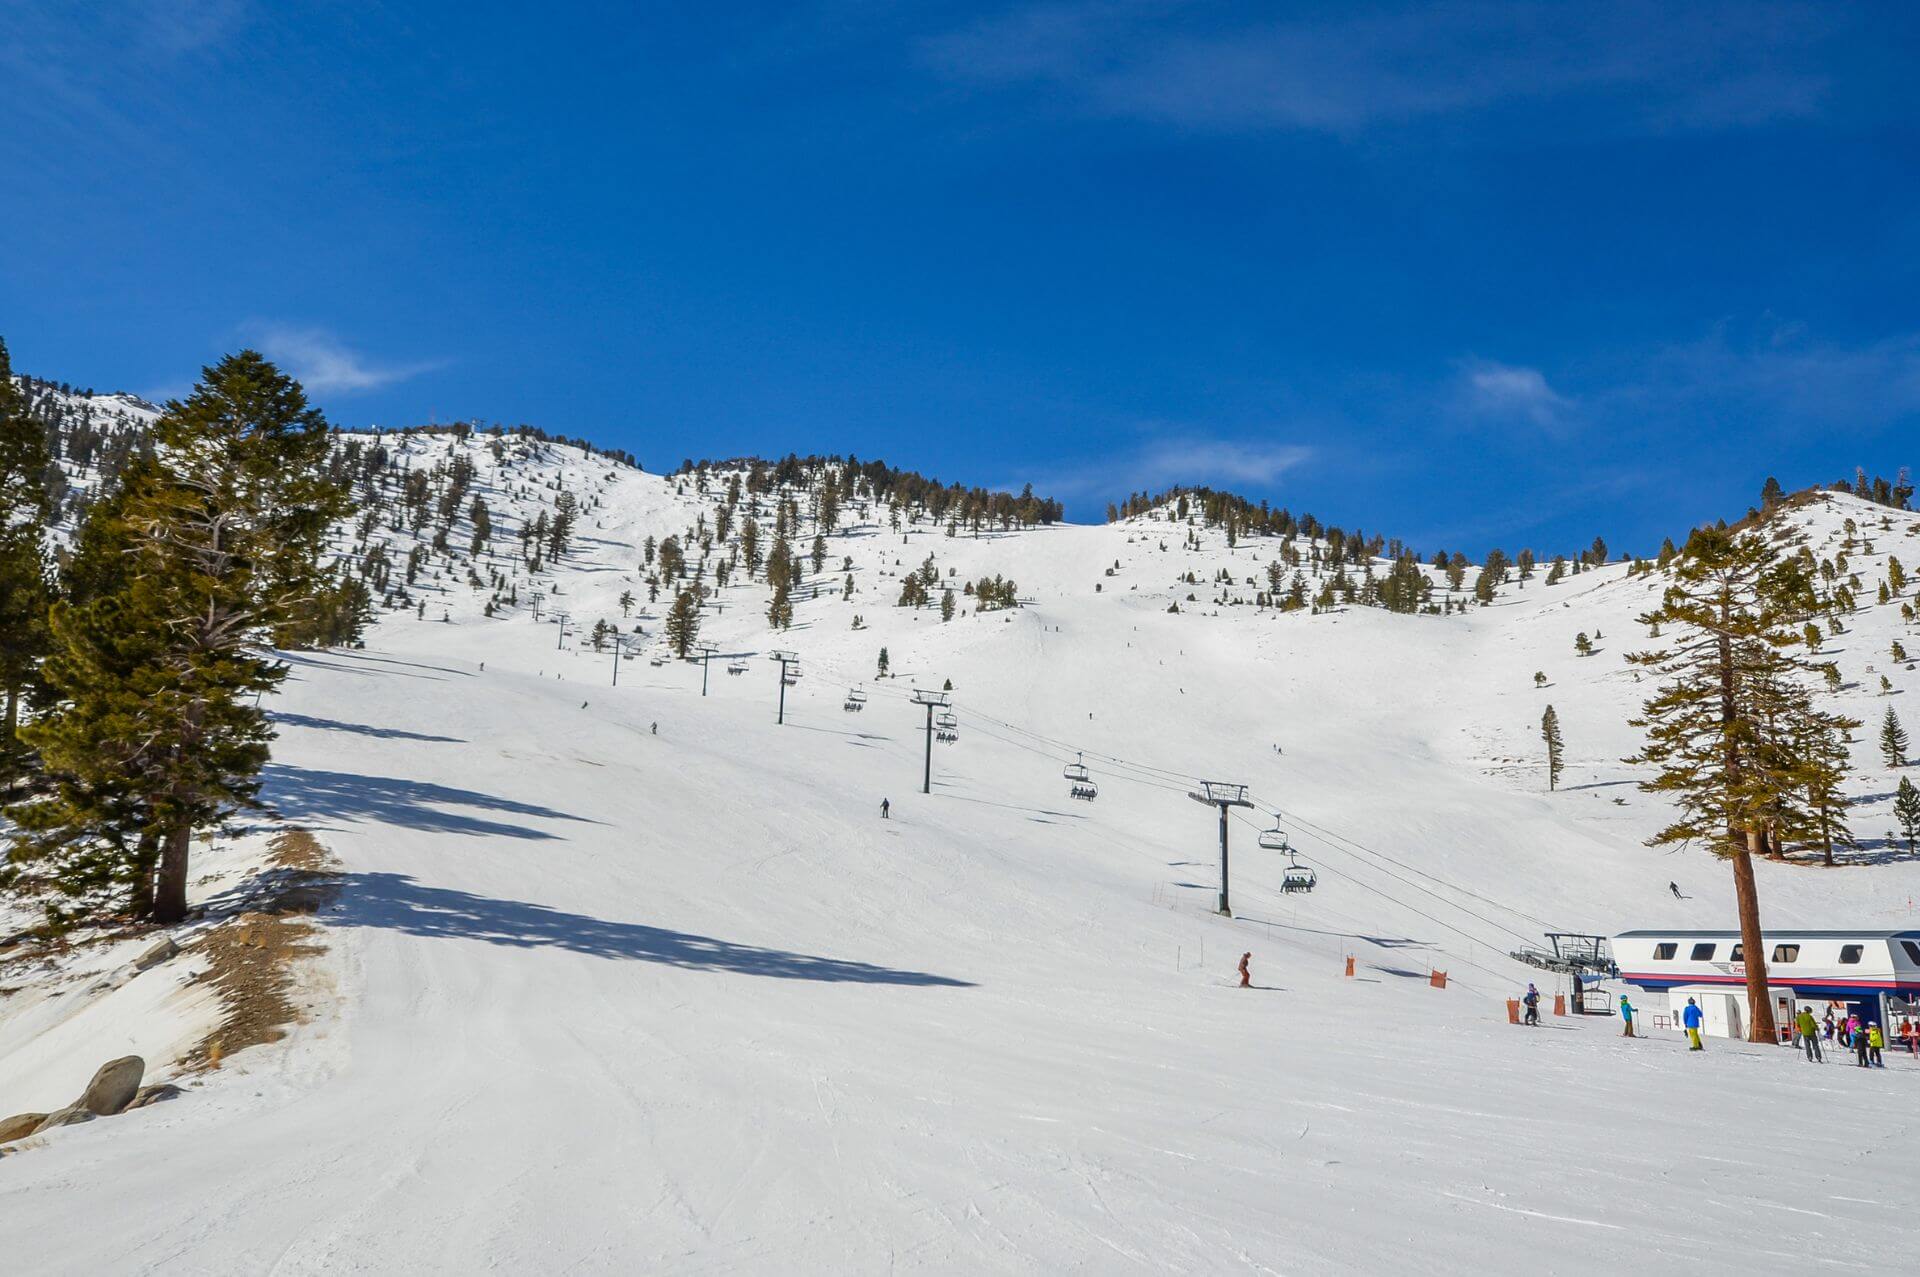 Os Estados Unidos reúnem alguns dos melhores destinos para praticar ski no mundo. Viaje com a nossa agência para viver dias emocionantes e sofisticados nas montanhas e seus charmosos arredores.